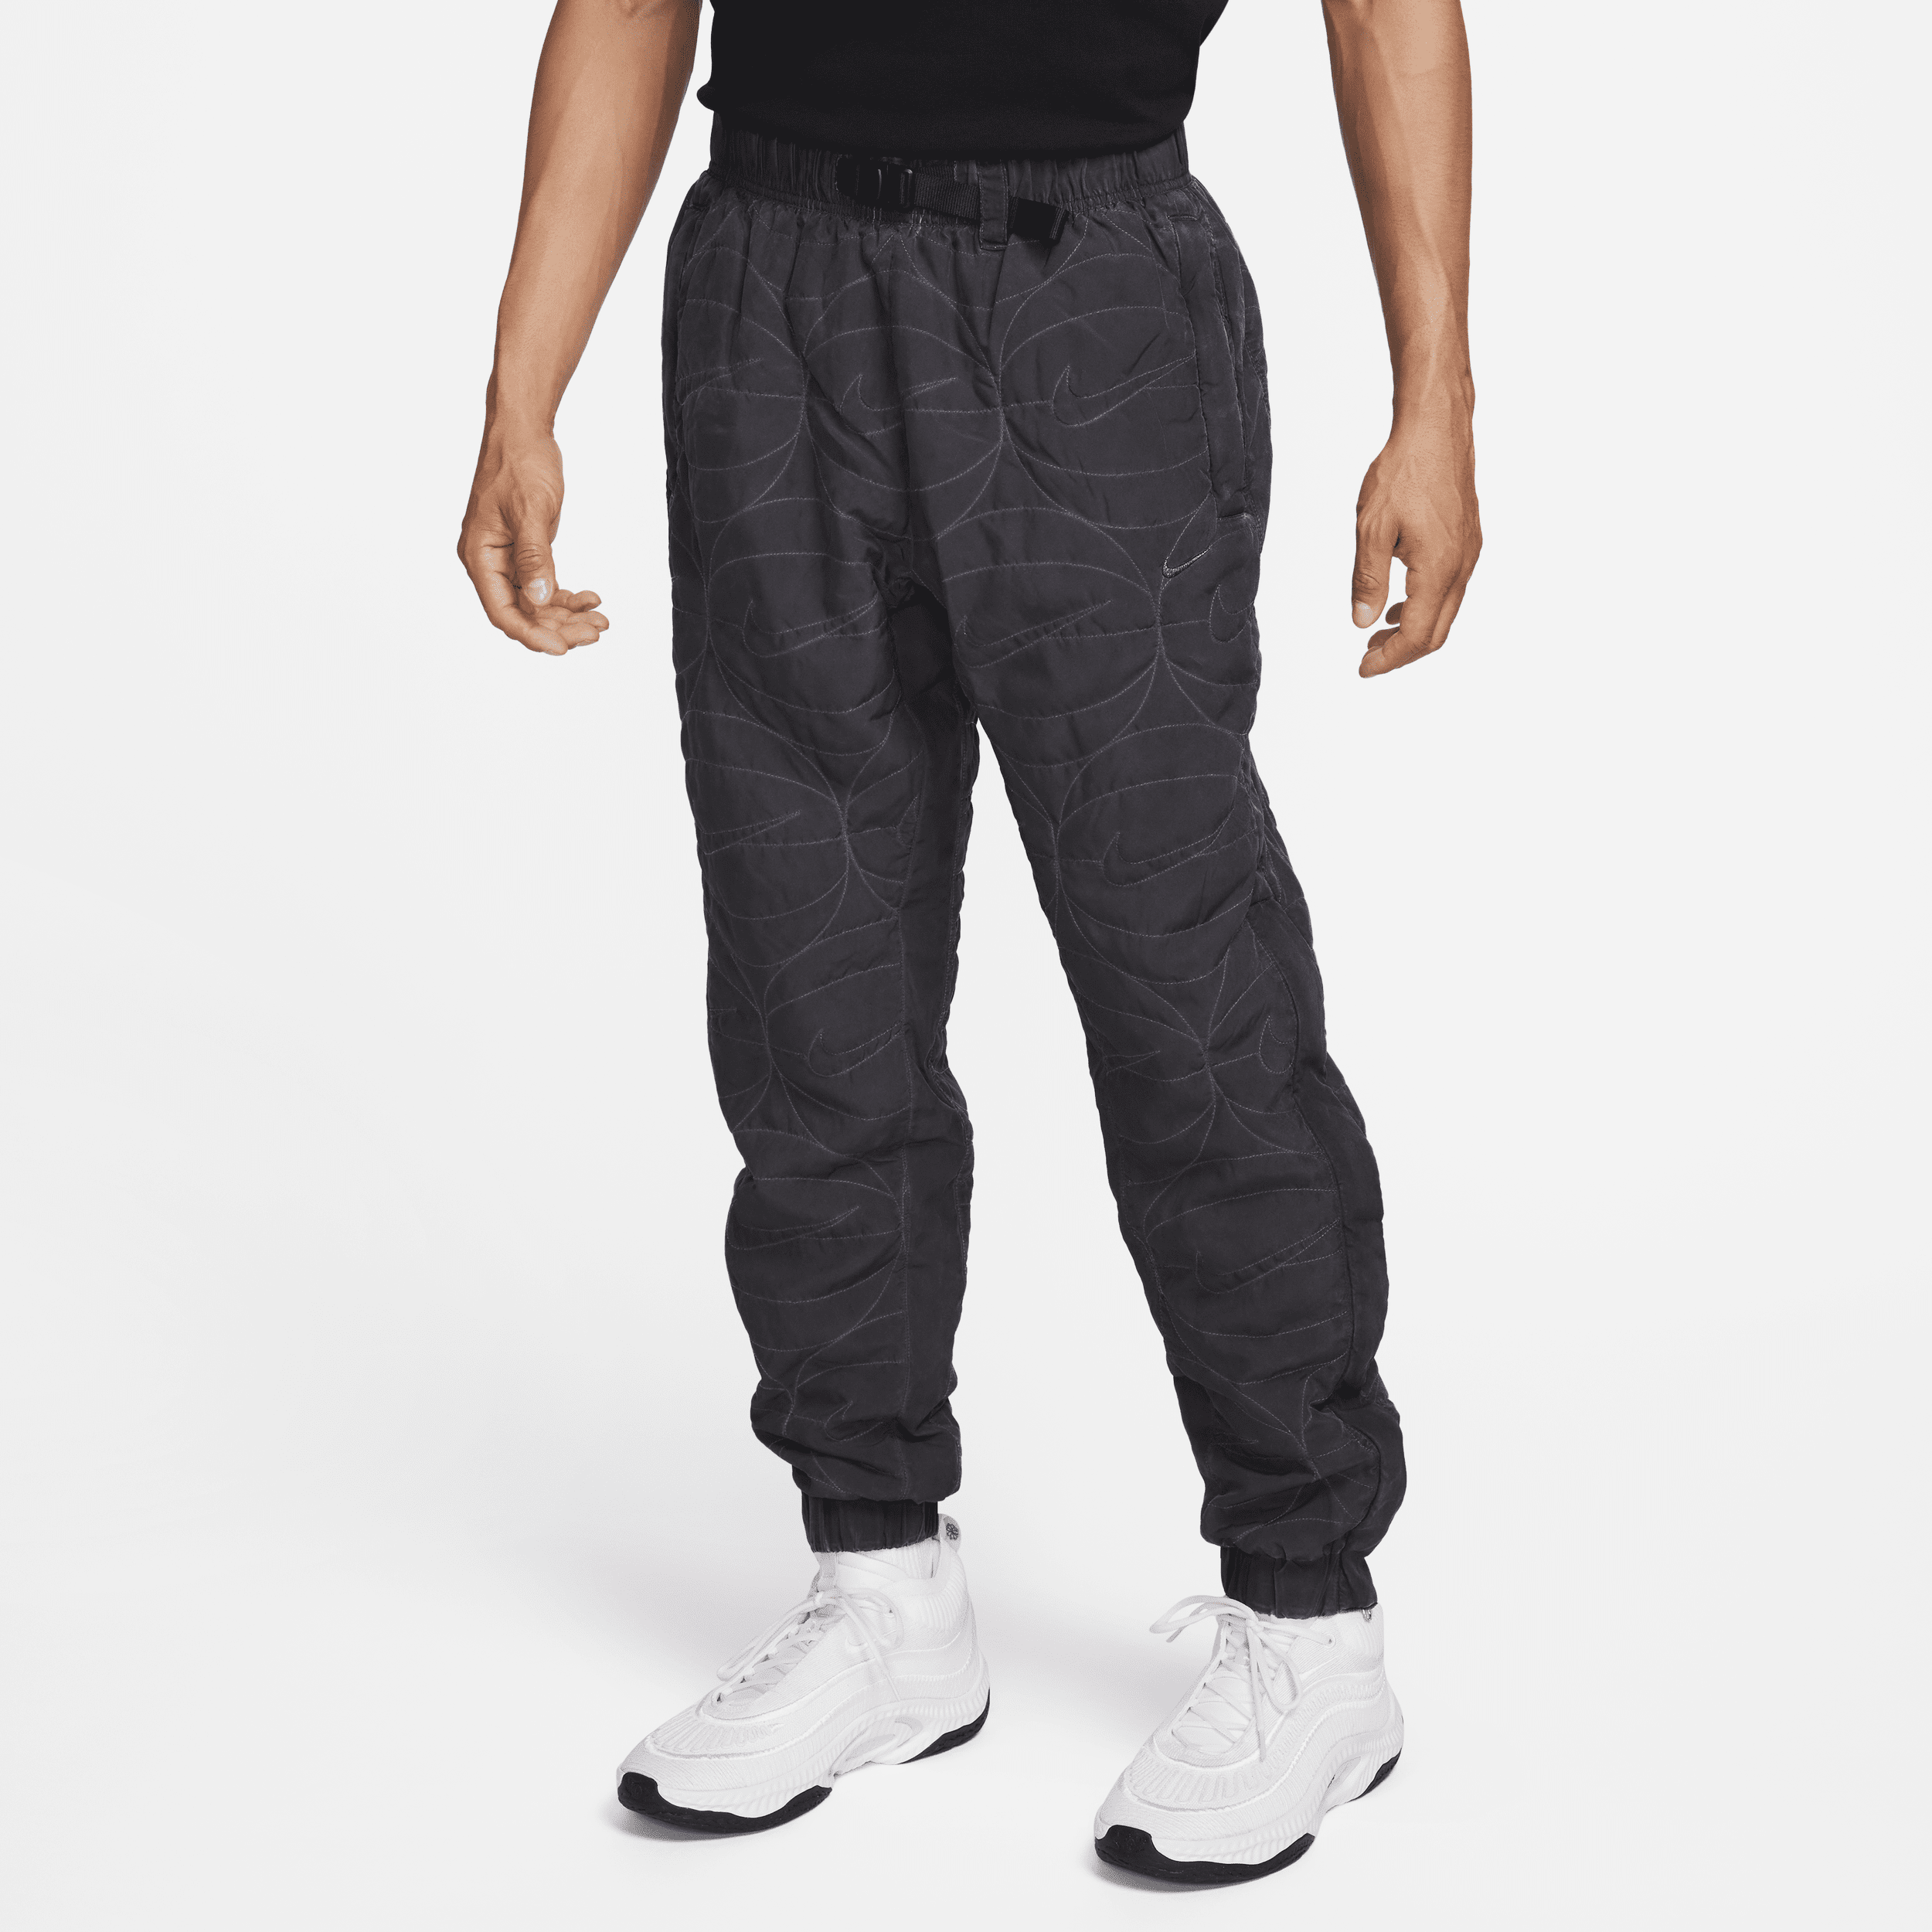 Nike Pantalón de baloncesto de tejido Woven - Hombre - Negro